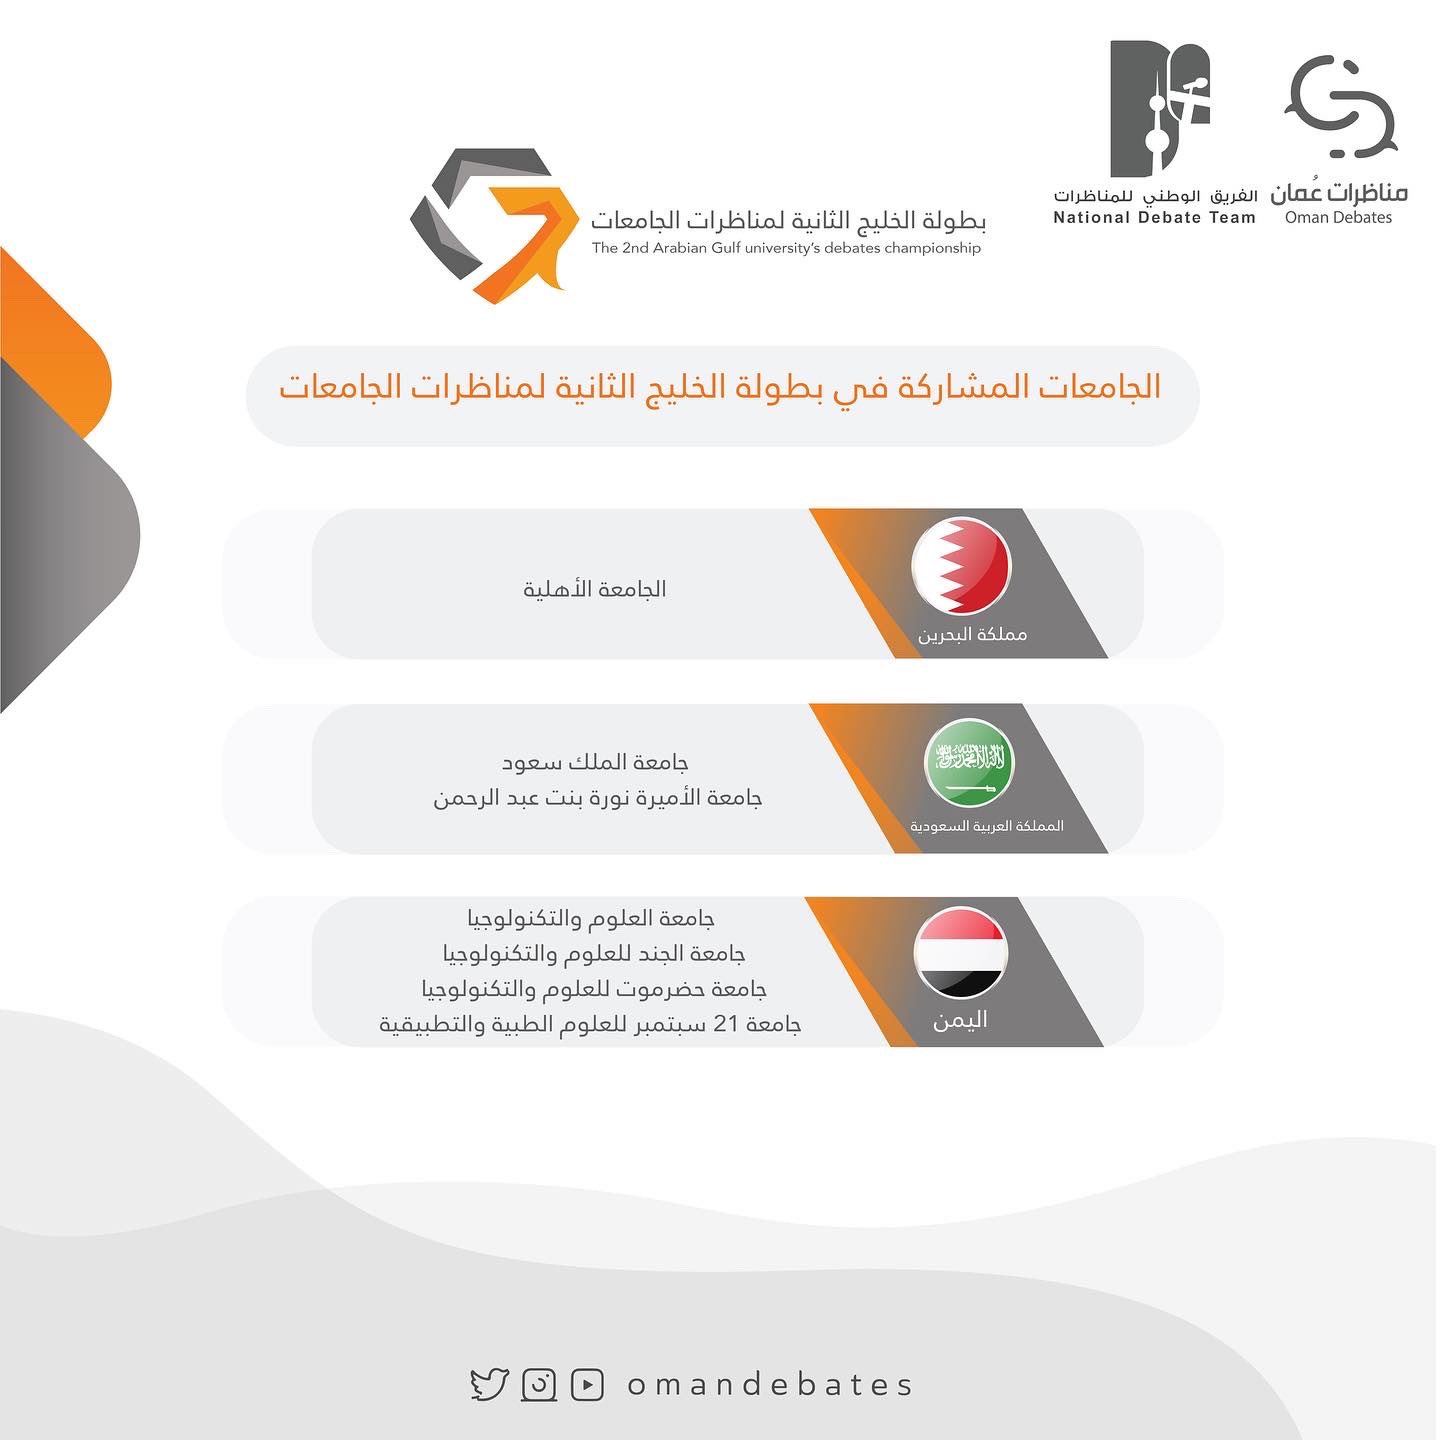 اليمن يشارك في بطولة الخليج الثانية لمناظرات الجامعات